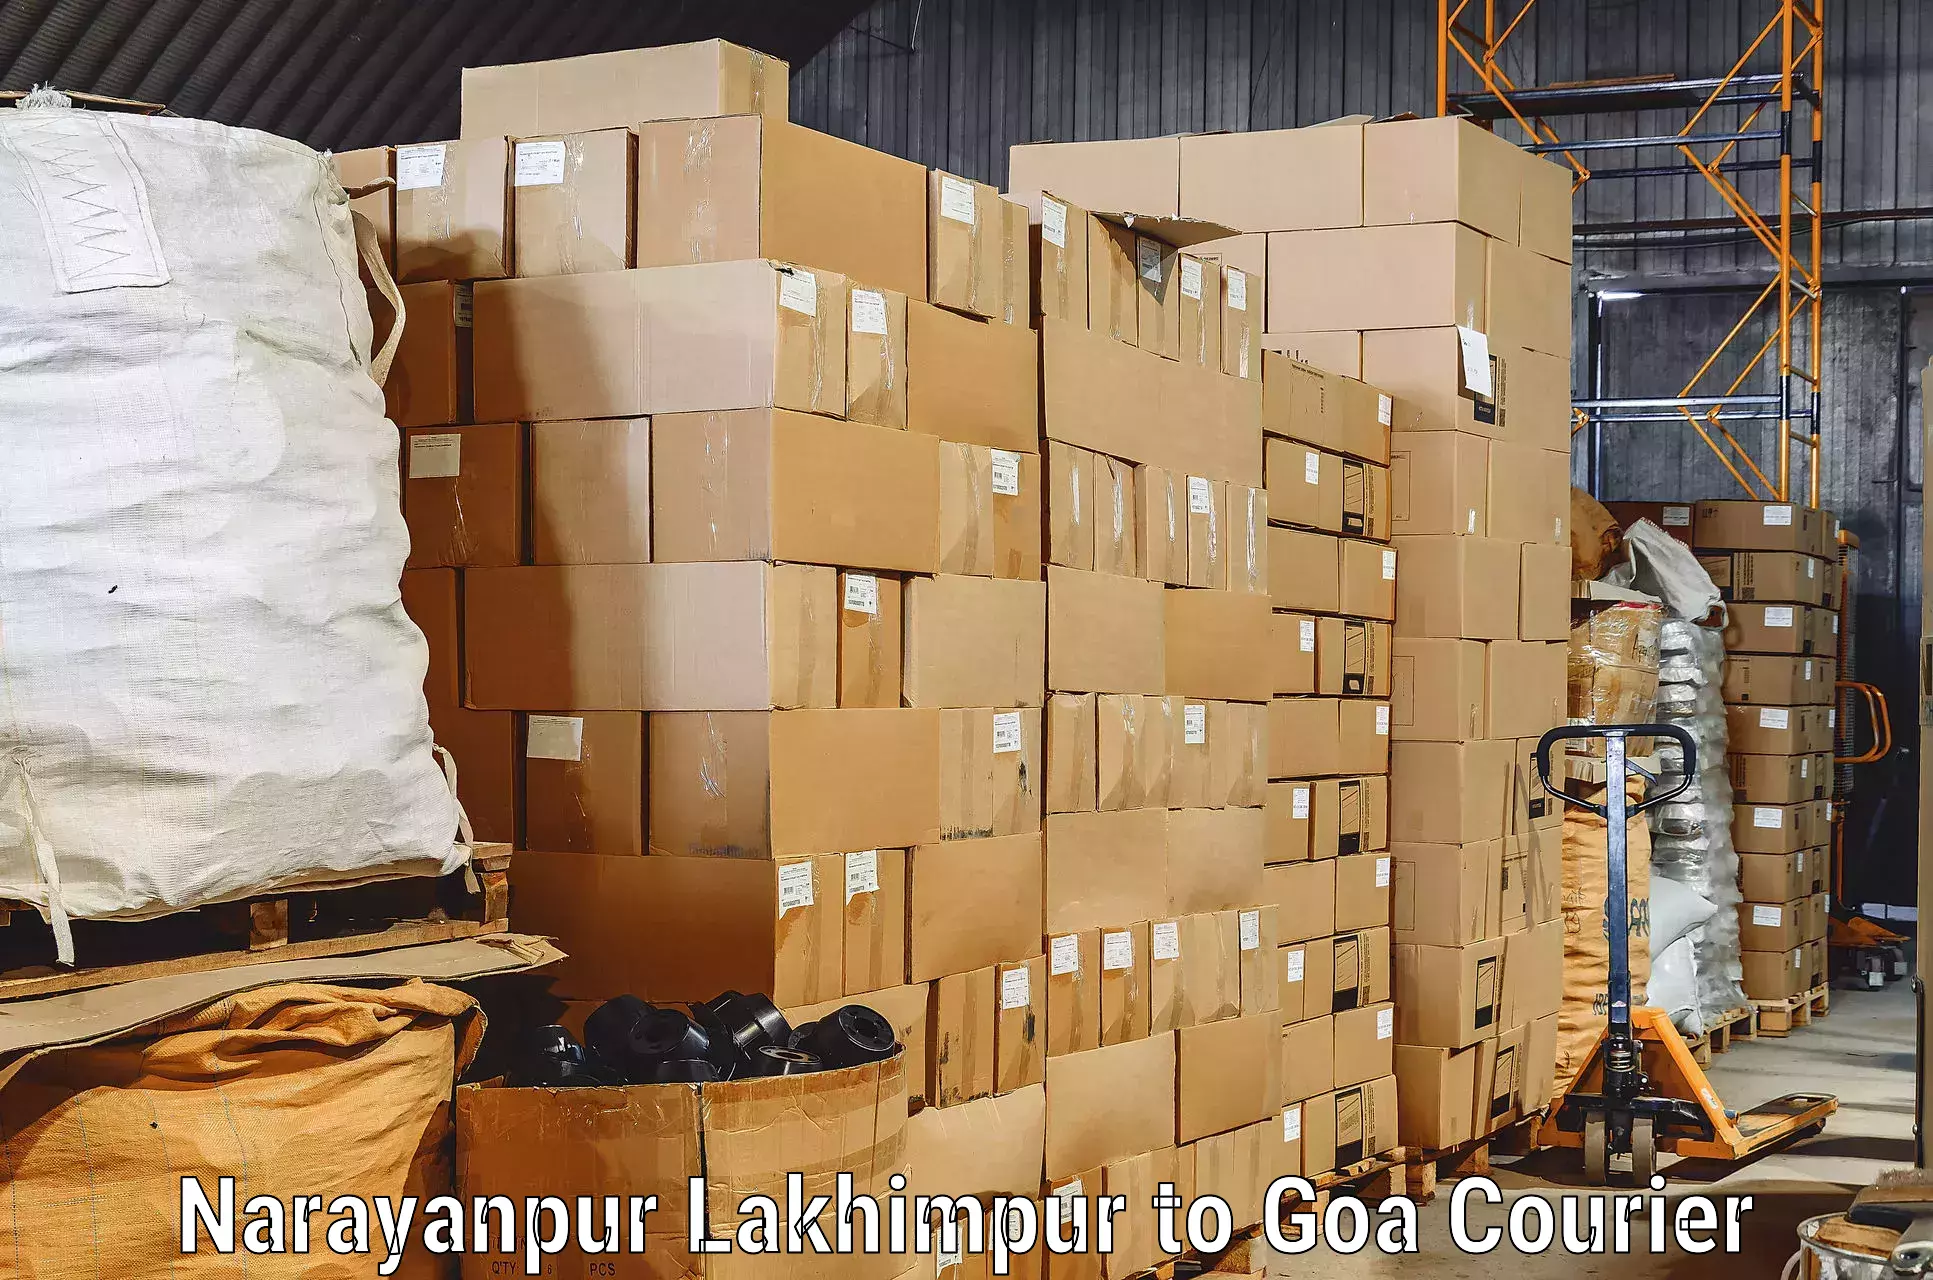 Furniture transport service Narayanpur Lakhimpur to Vasco da Gama